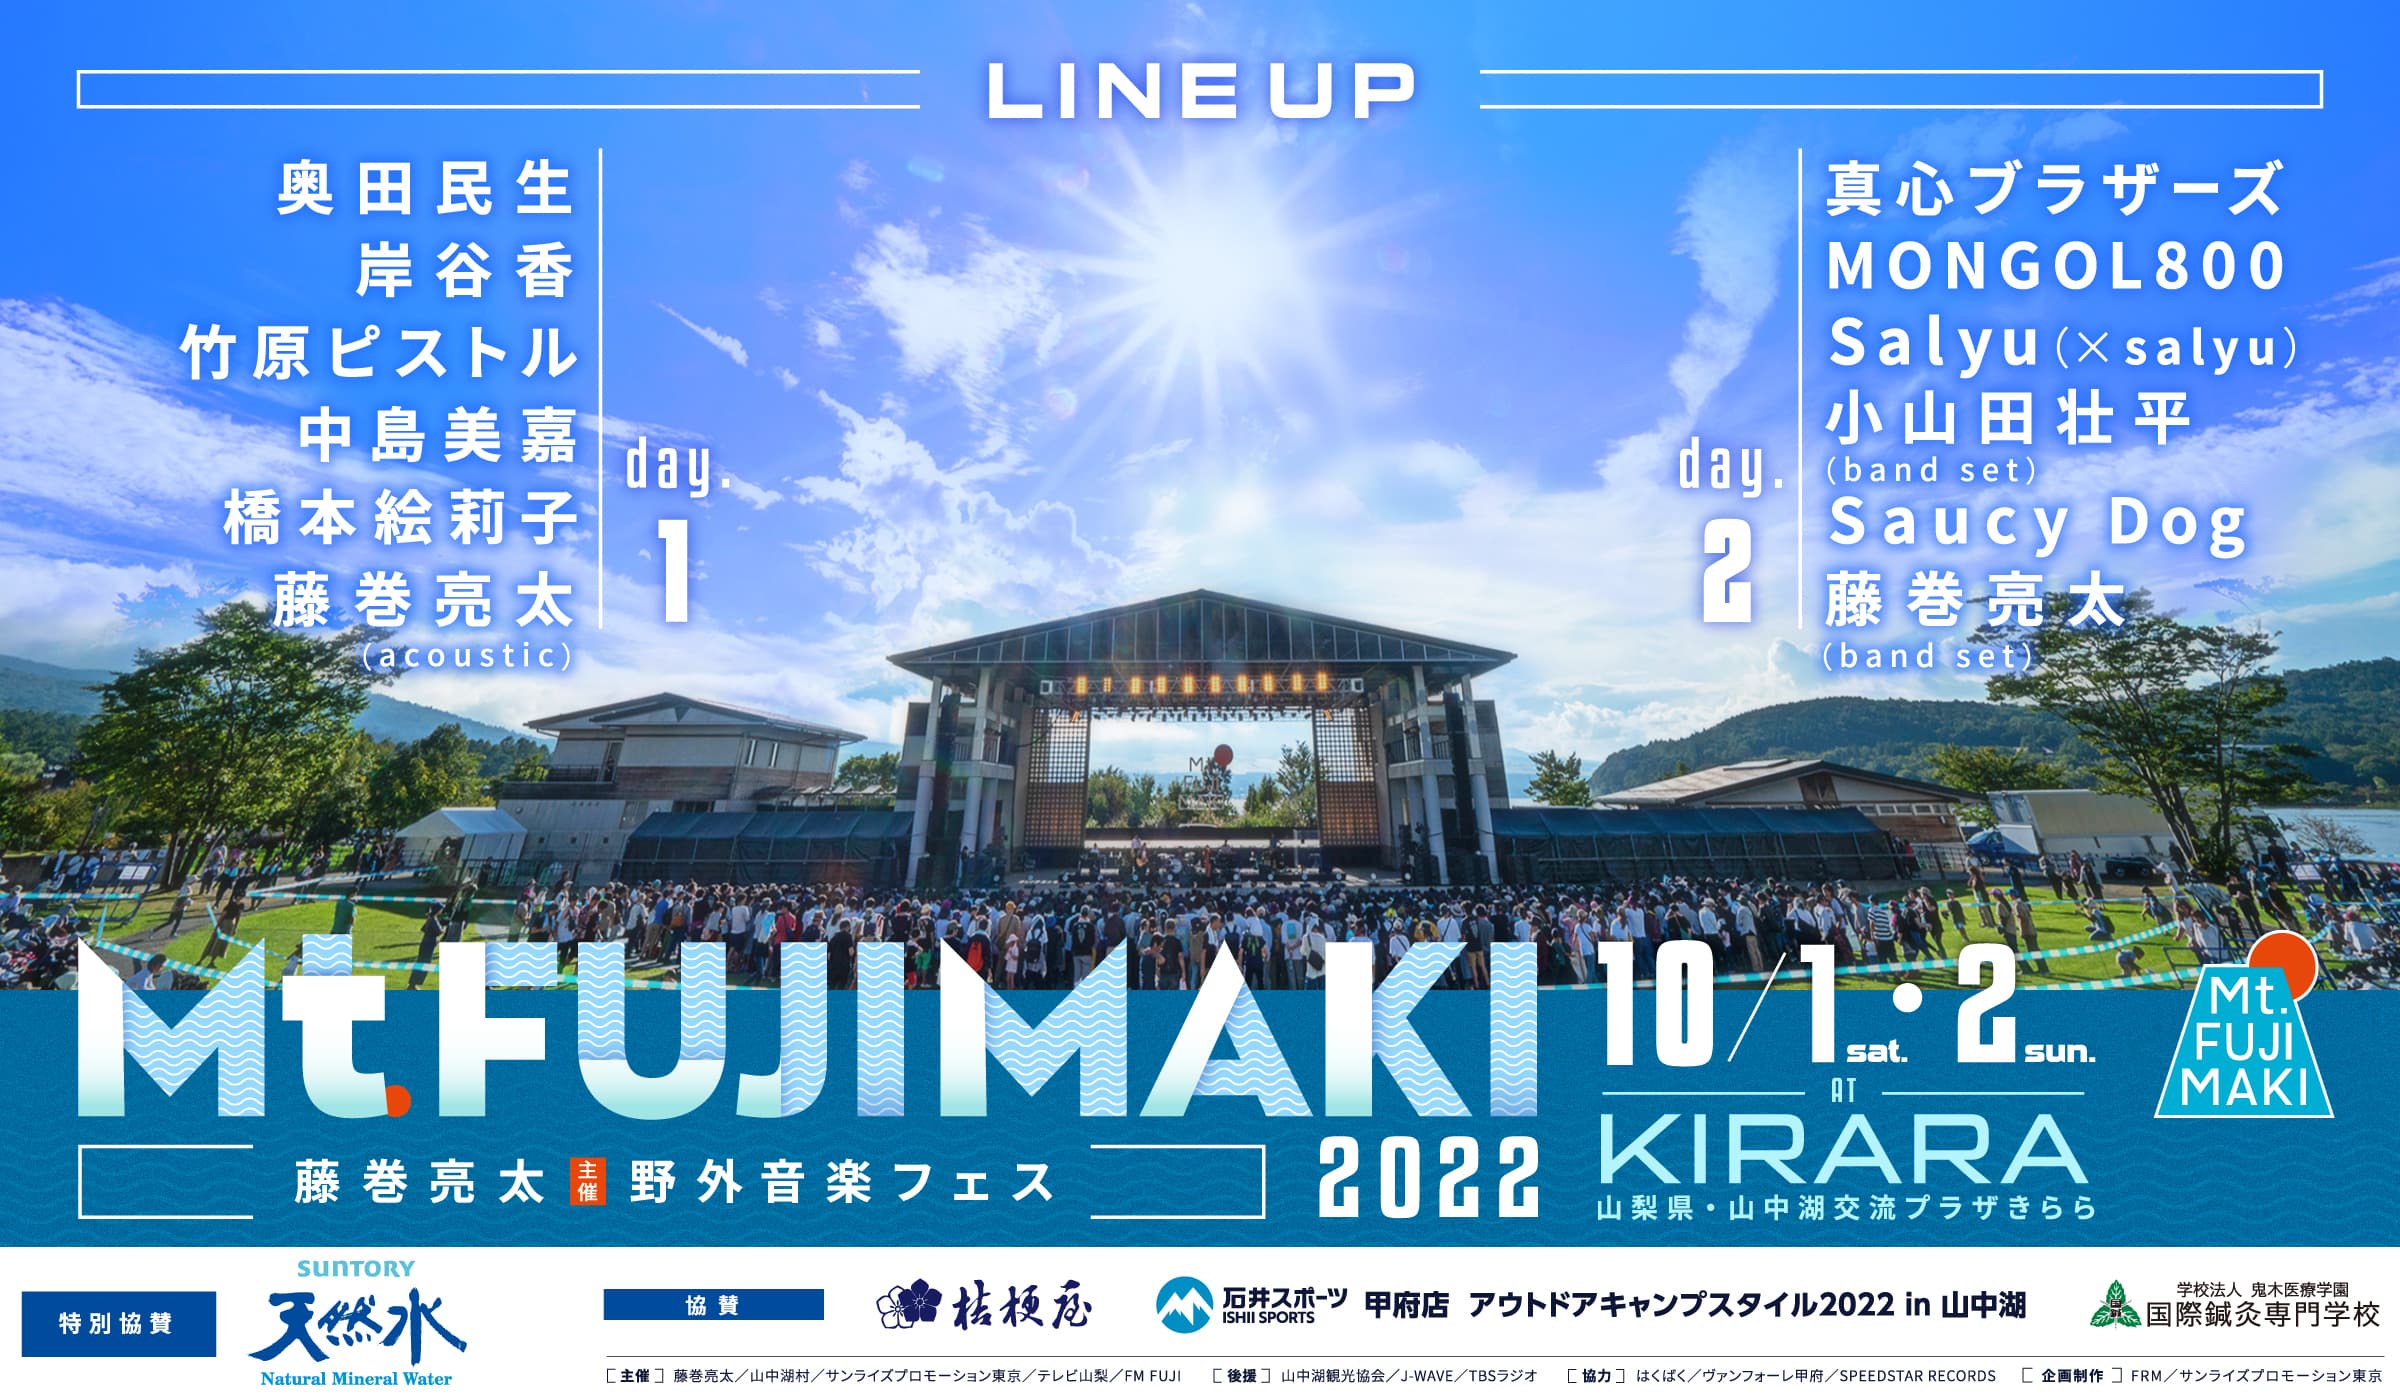 Mt.FUJIMAKI 2022 / 2022.10.1.sat, 10.2.Sun マウントフジマキ2022開催 